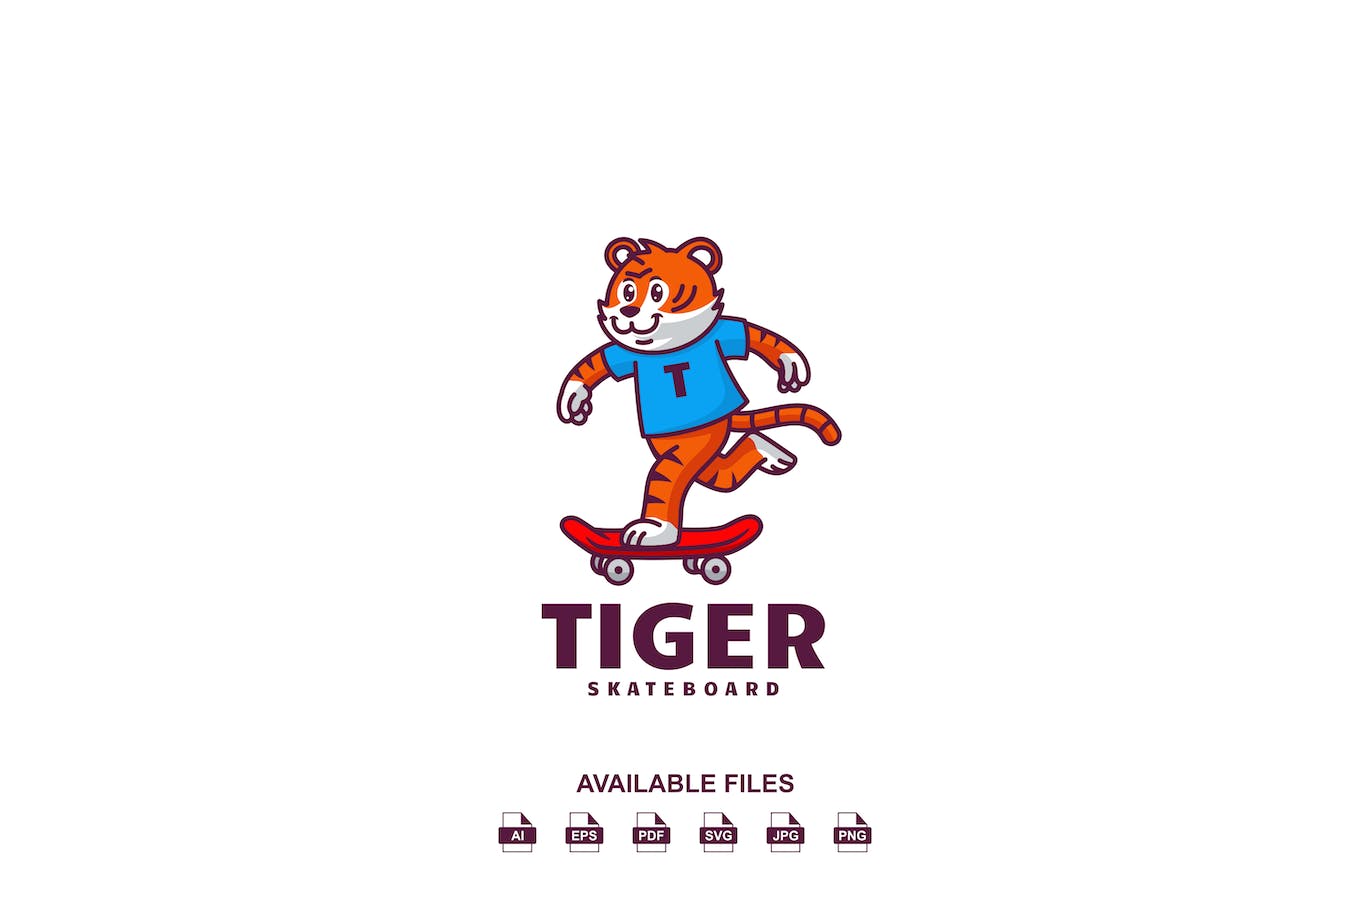 老虎滑板标志设计模板素材 Tiger Skateboard Logo